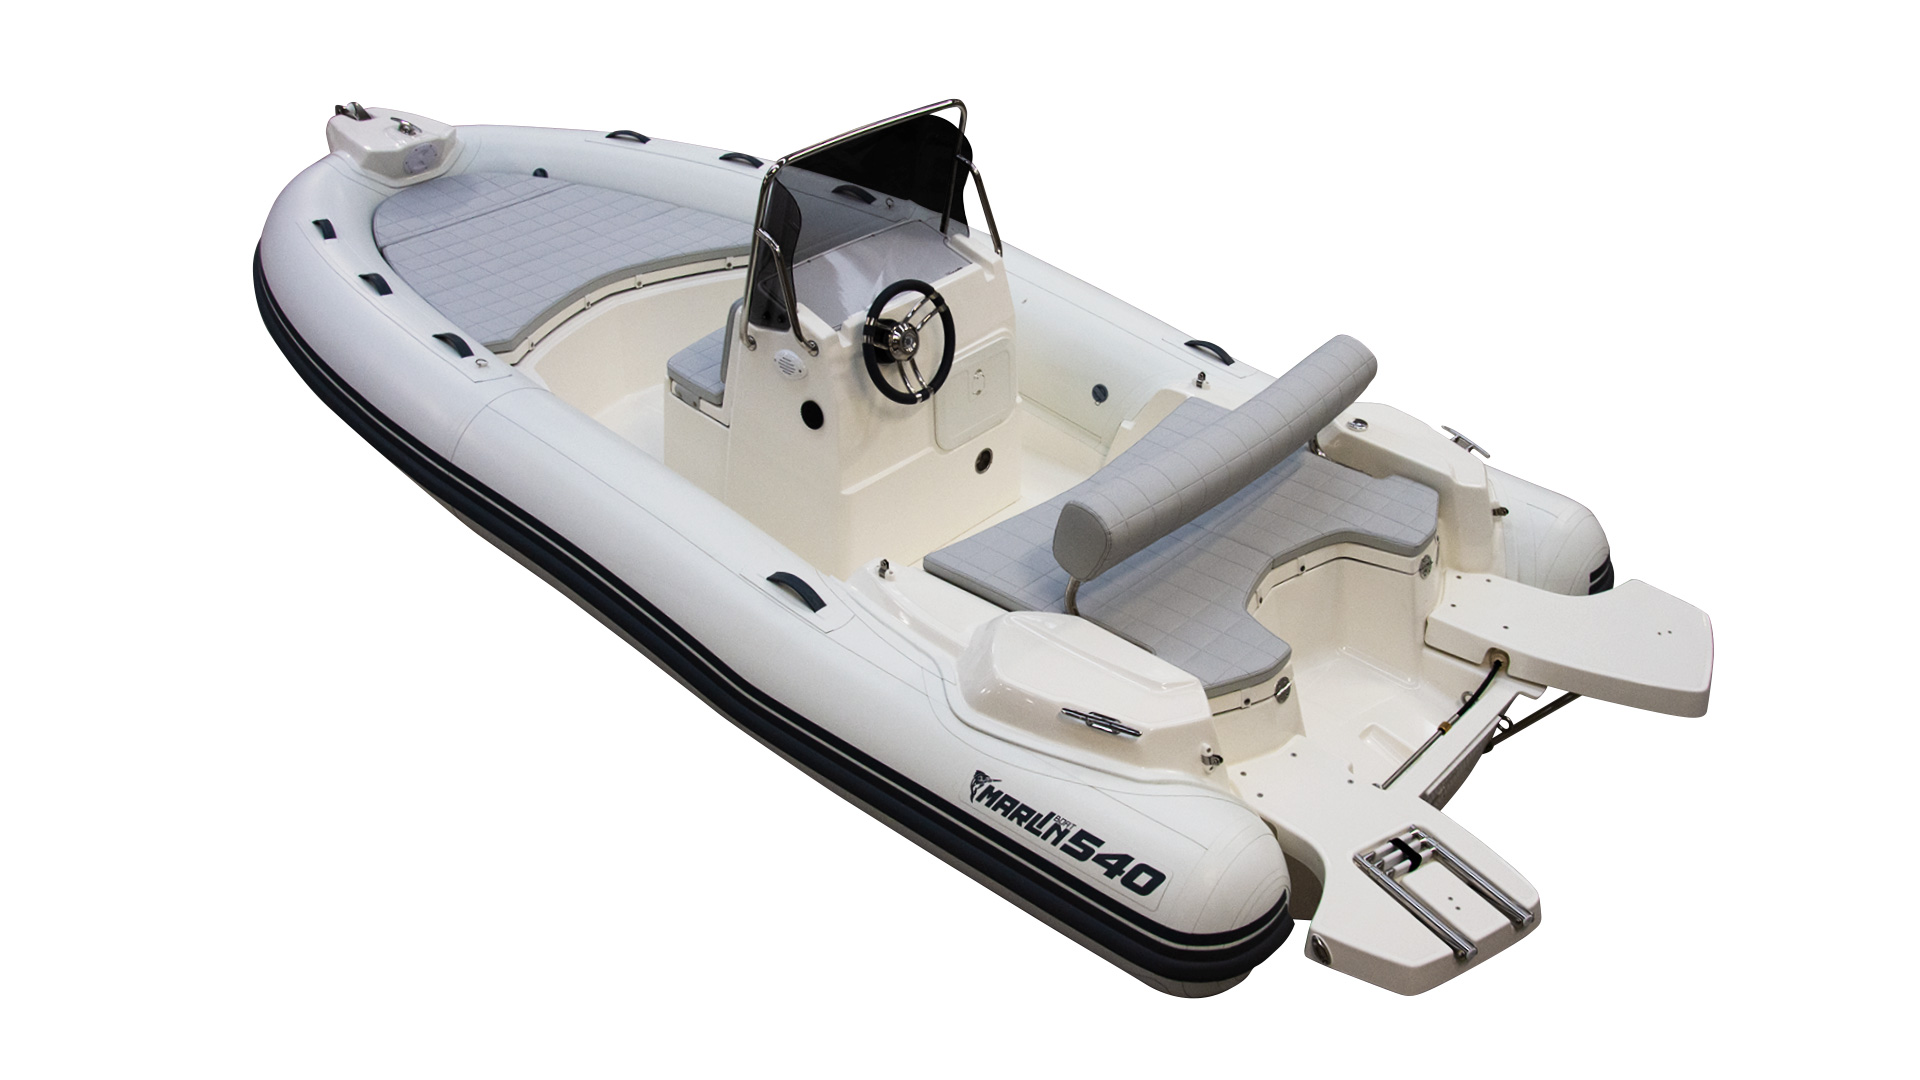 Marlin Boat - Gommone Fuoribordo Modello 540